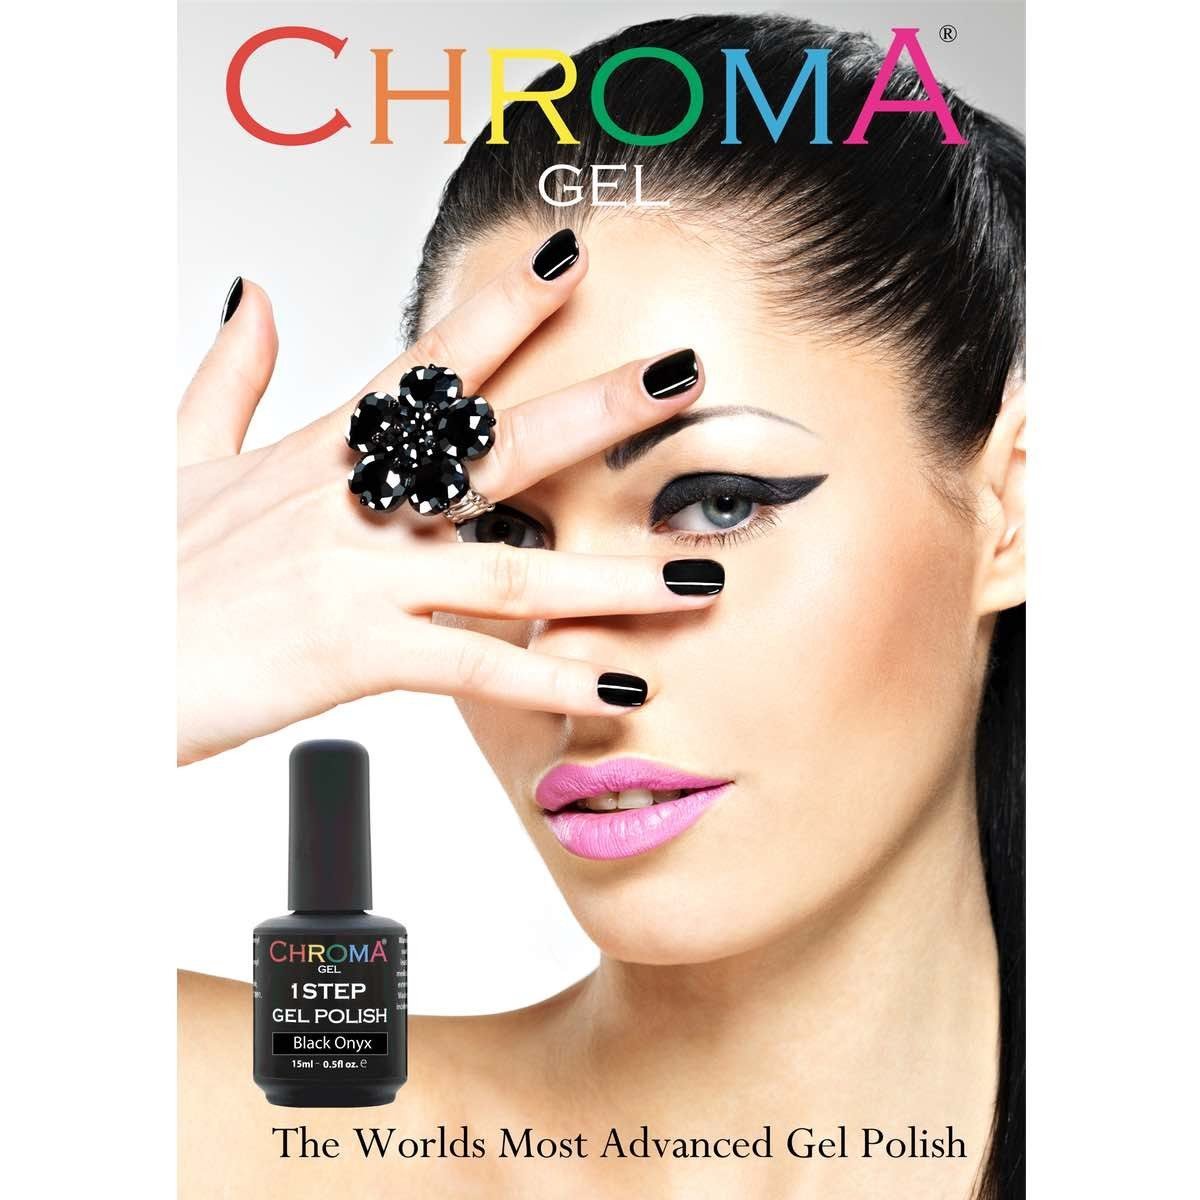 Chroma Gel 1 Step Gel Polish Salon Poster - Chroma Gel